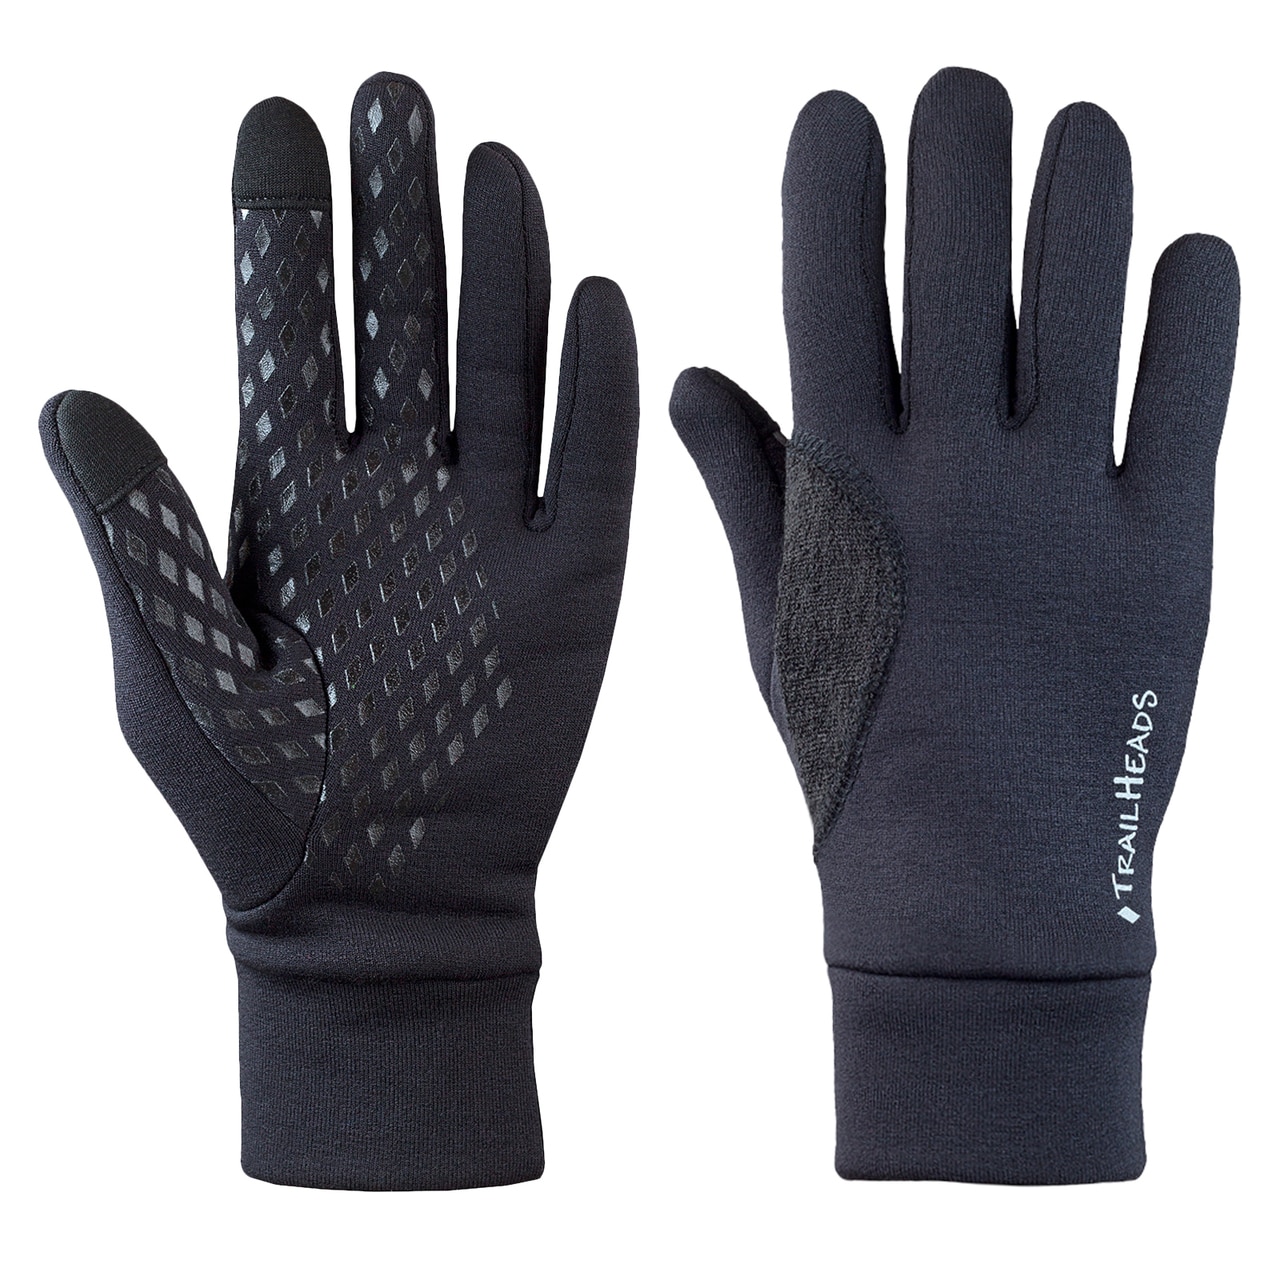 Fleece gloves for running in winter